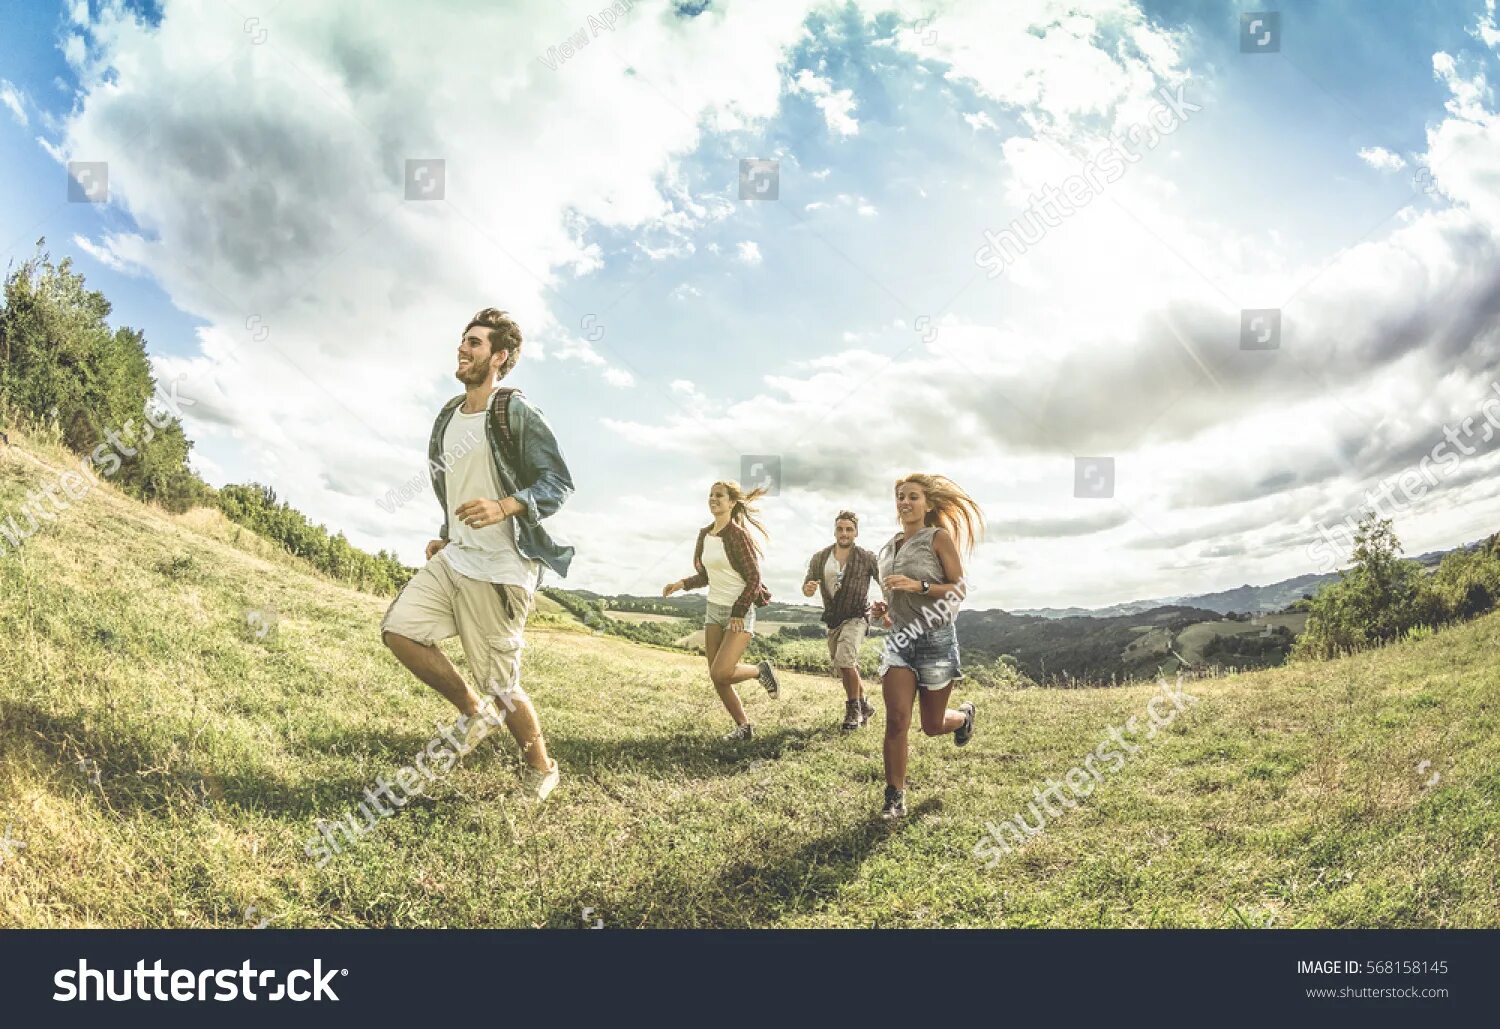 Счастливая семья бежит по полю. Счастливый человек бежит. Счастливые люди бегут по полю. Семья бежит по траве. Field people